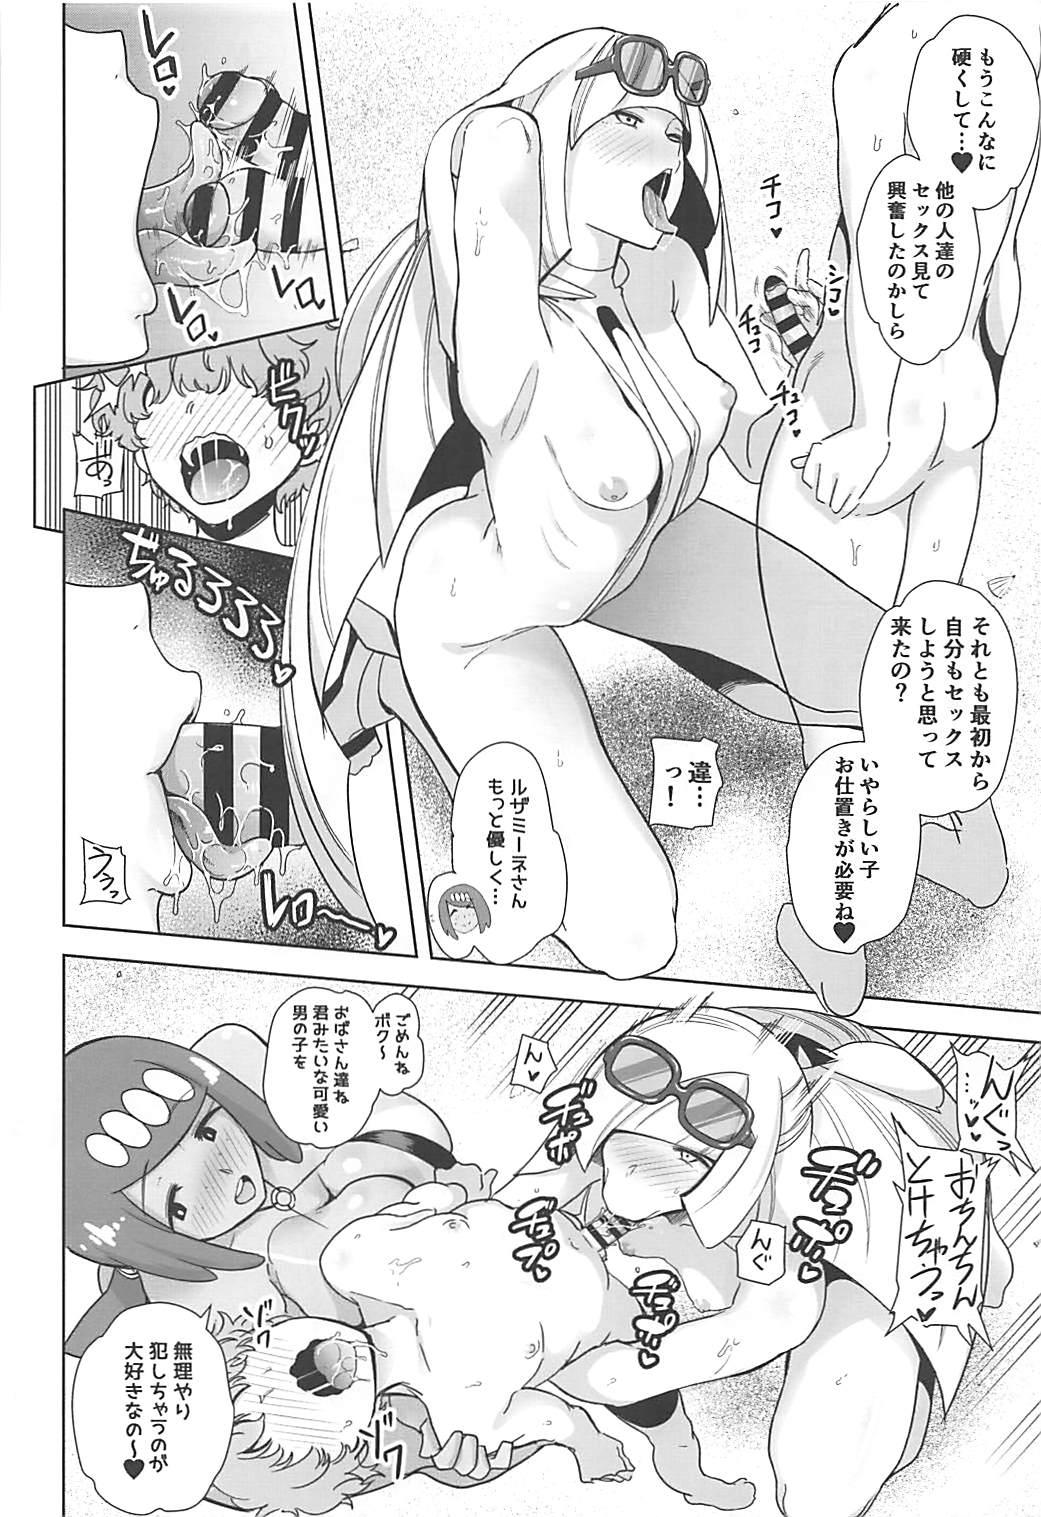 Making Love Porn Alola no Yoru no Sugata 3 - Pokemon Curious - Page 5